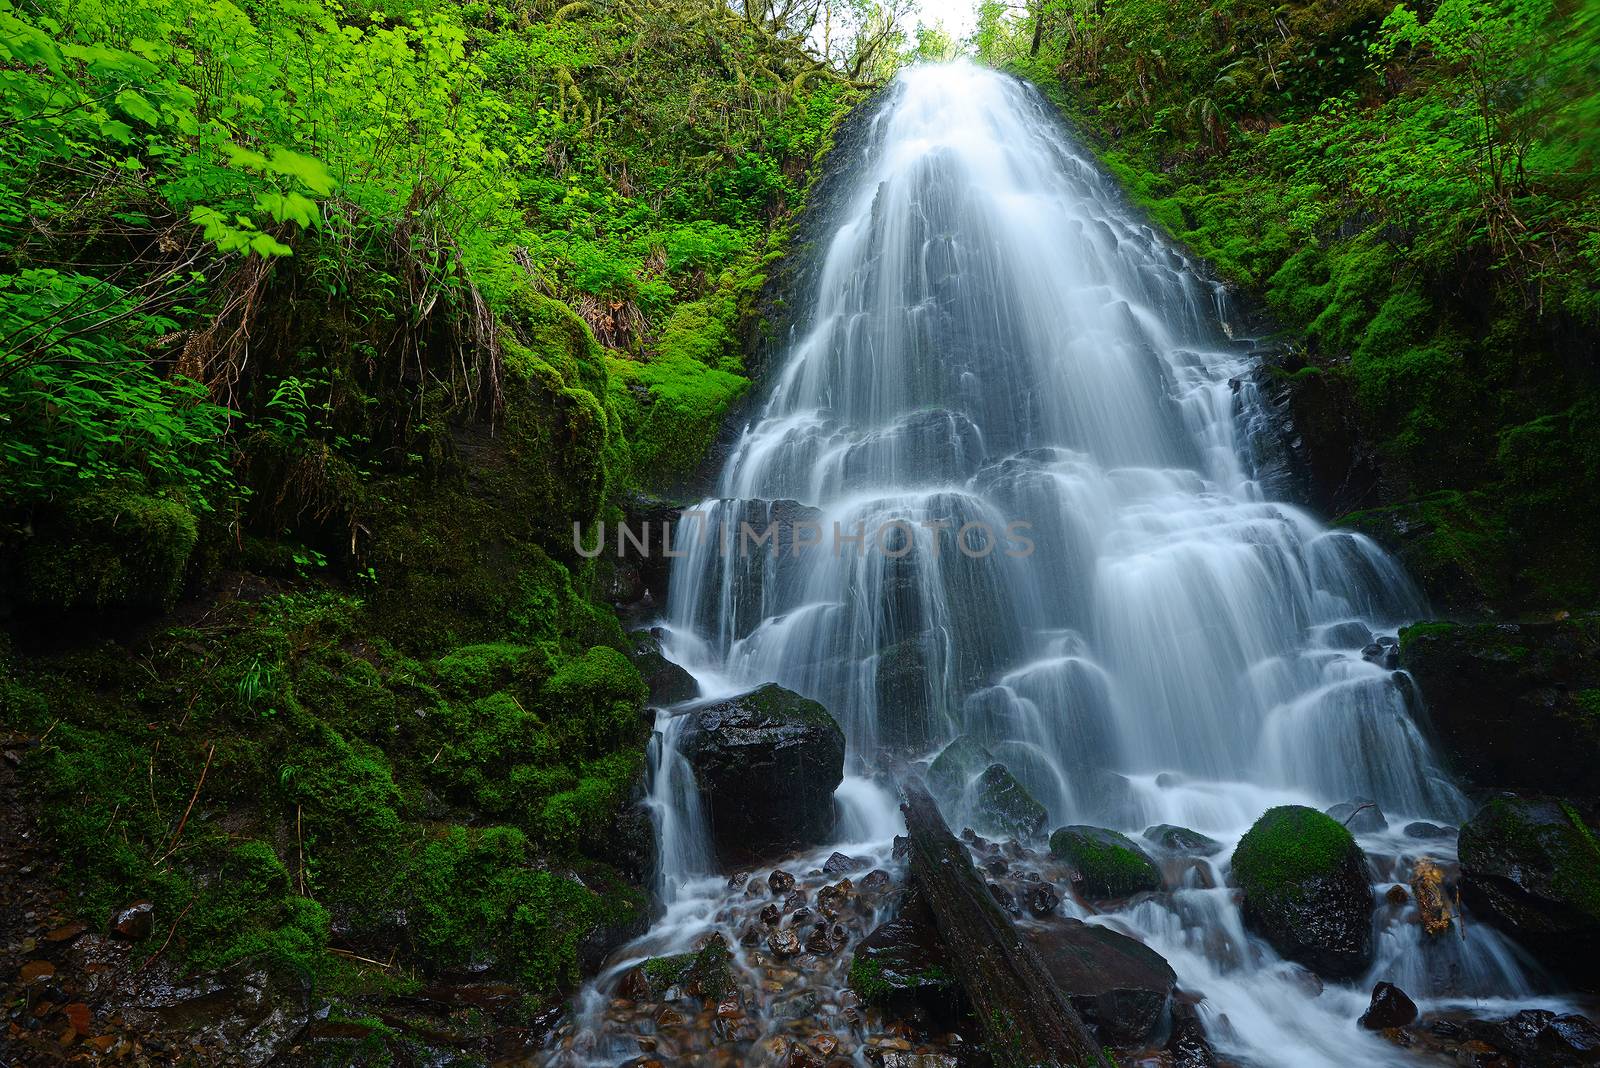 waterfall in oregon rain forest near portland